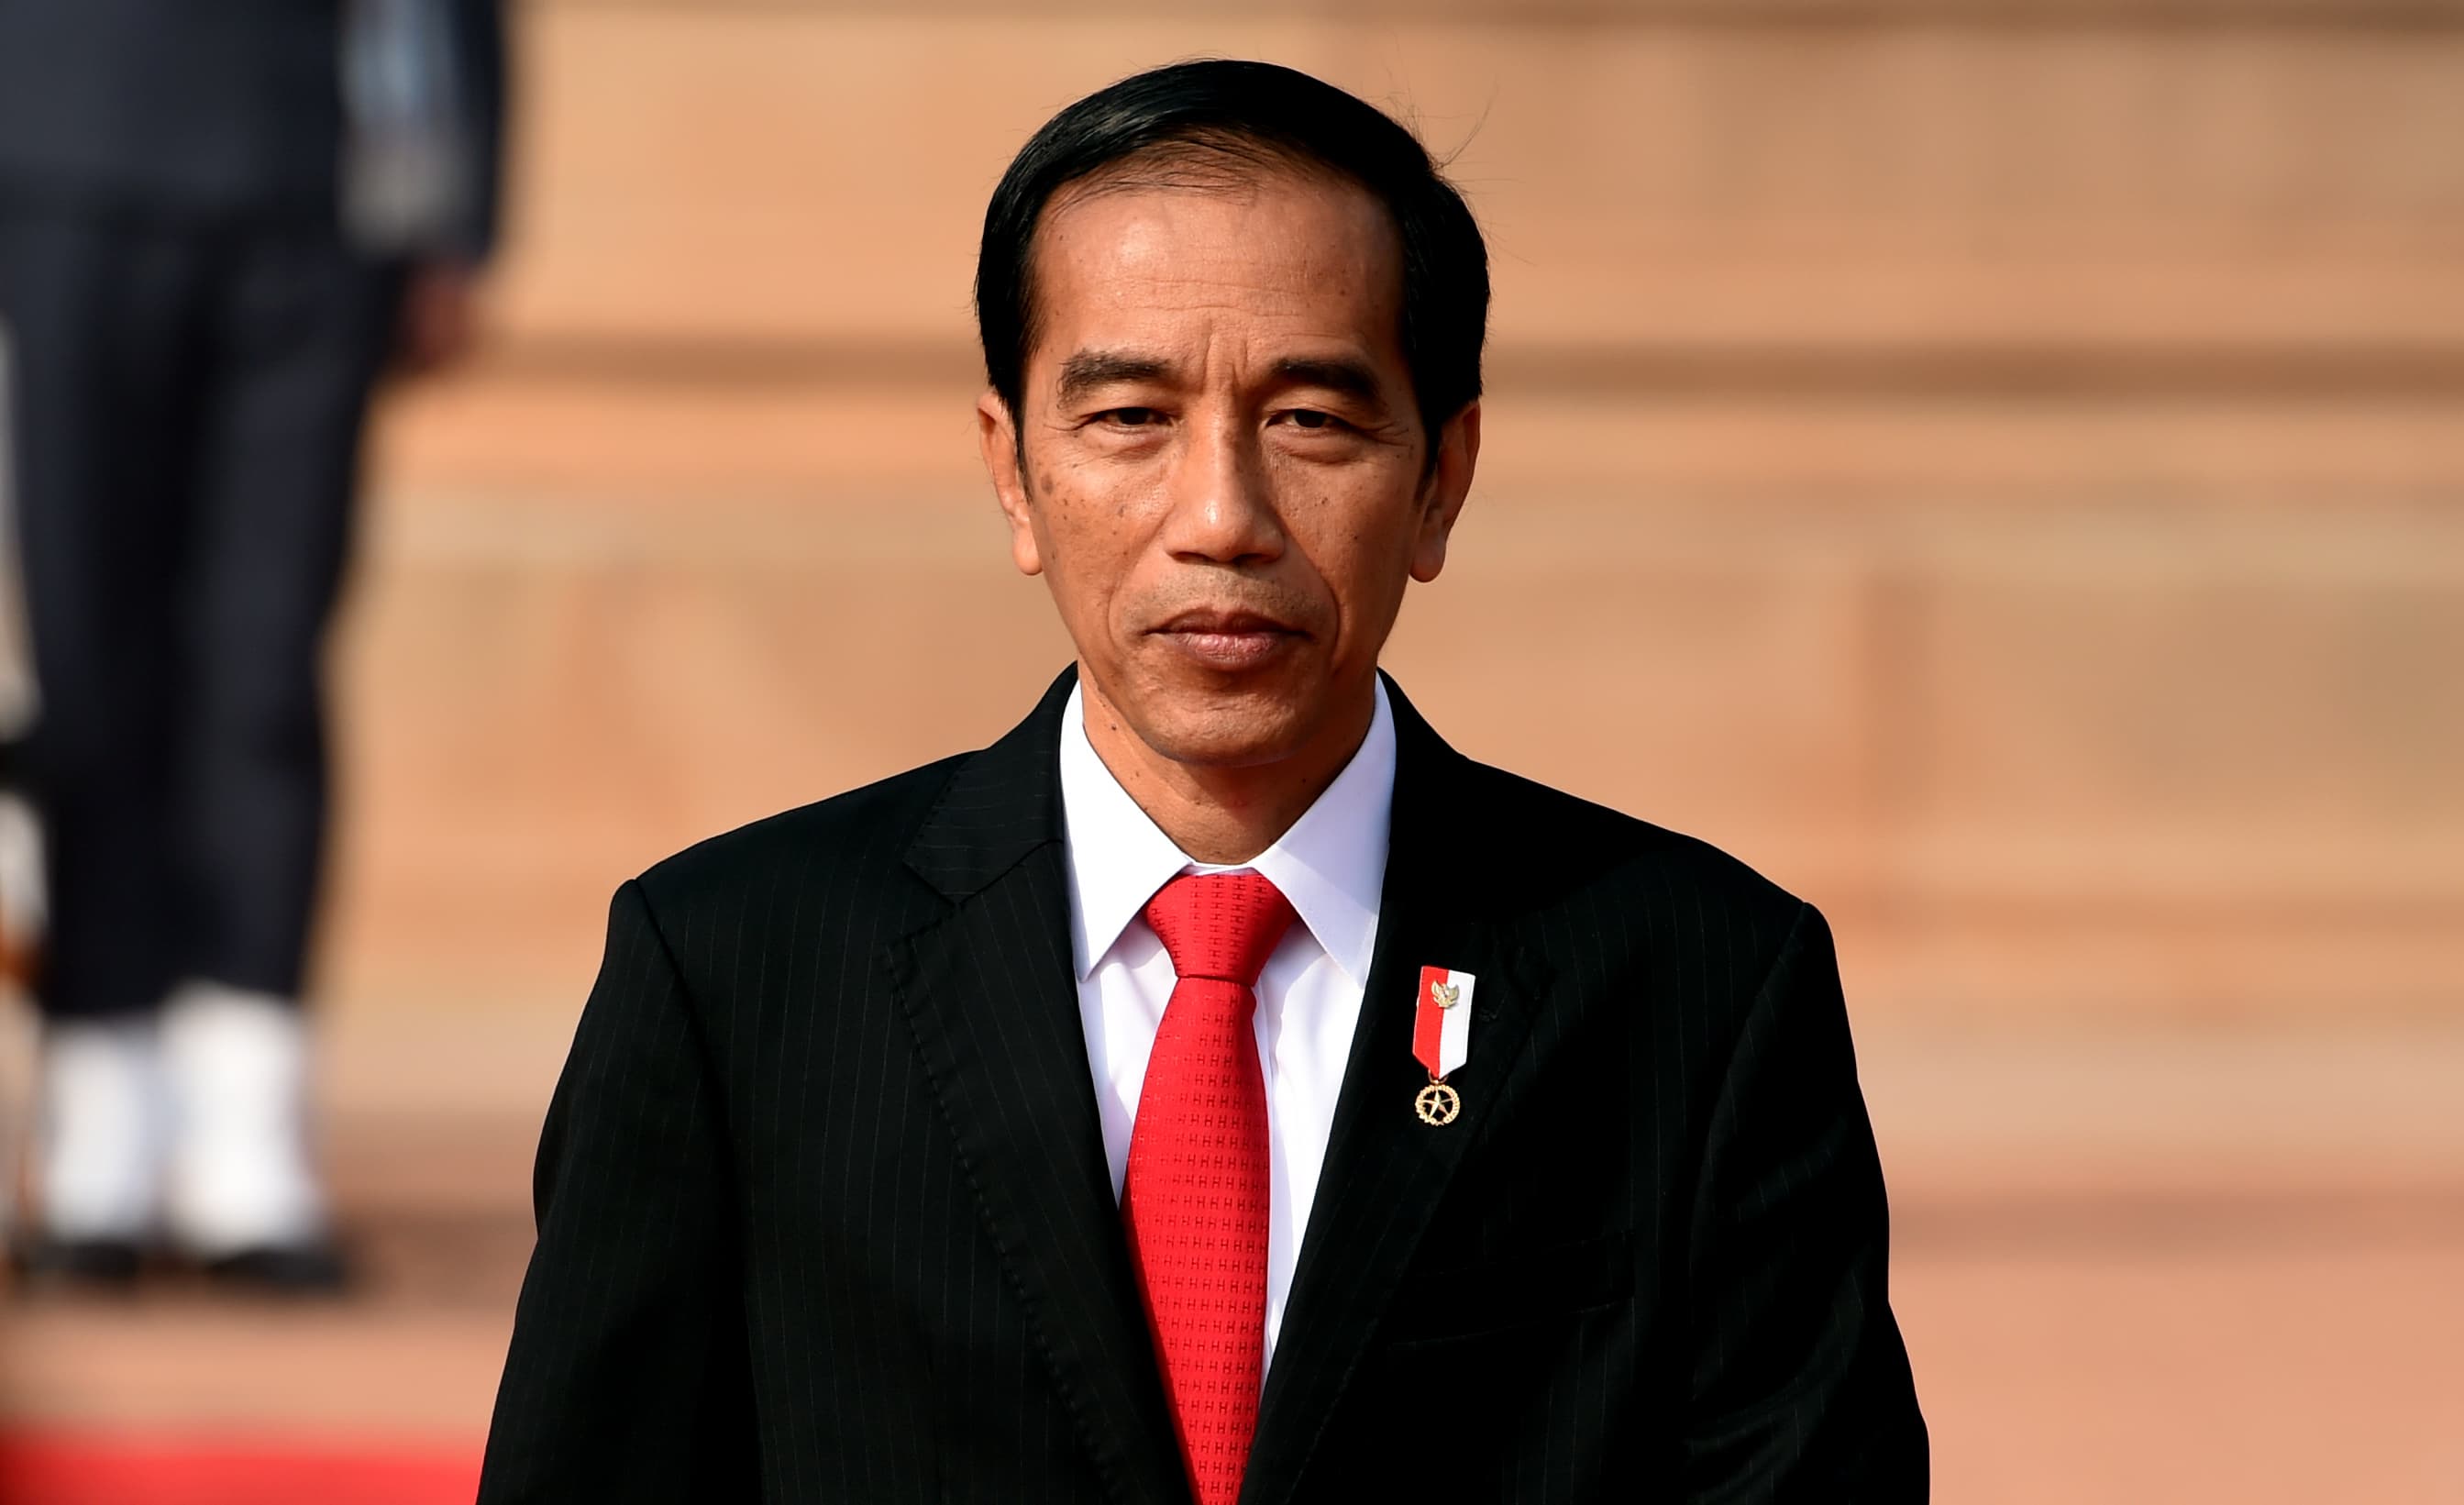 Indonesia President Jokowi: New capital on East Kalimantan, Borneo